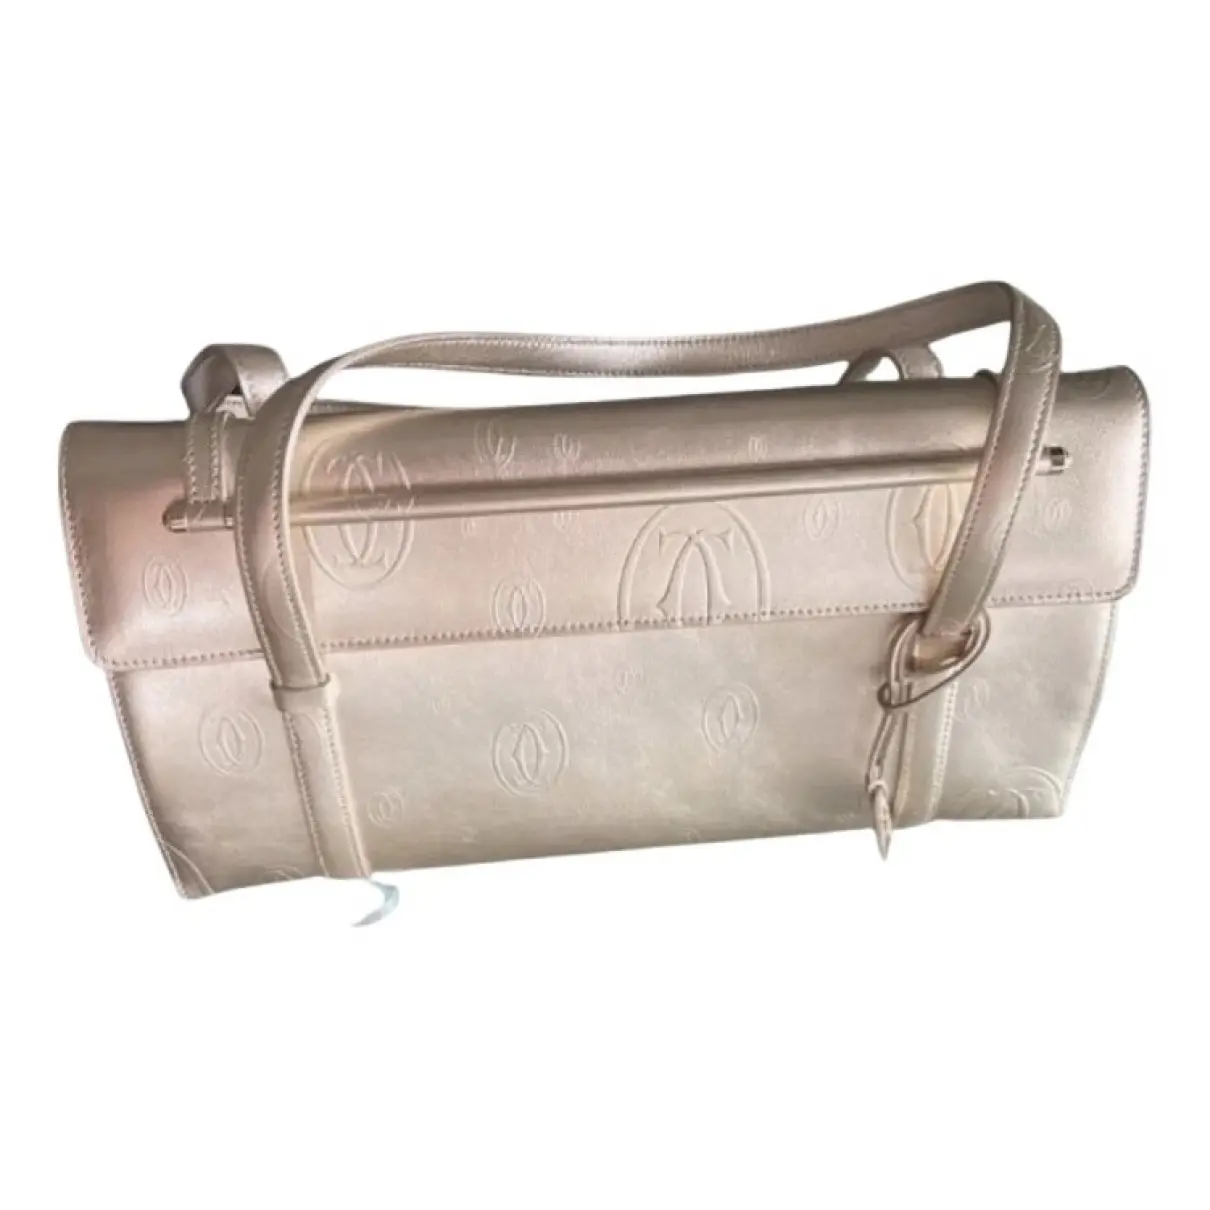 Cabochon leather handbag Cartier